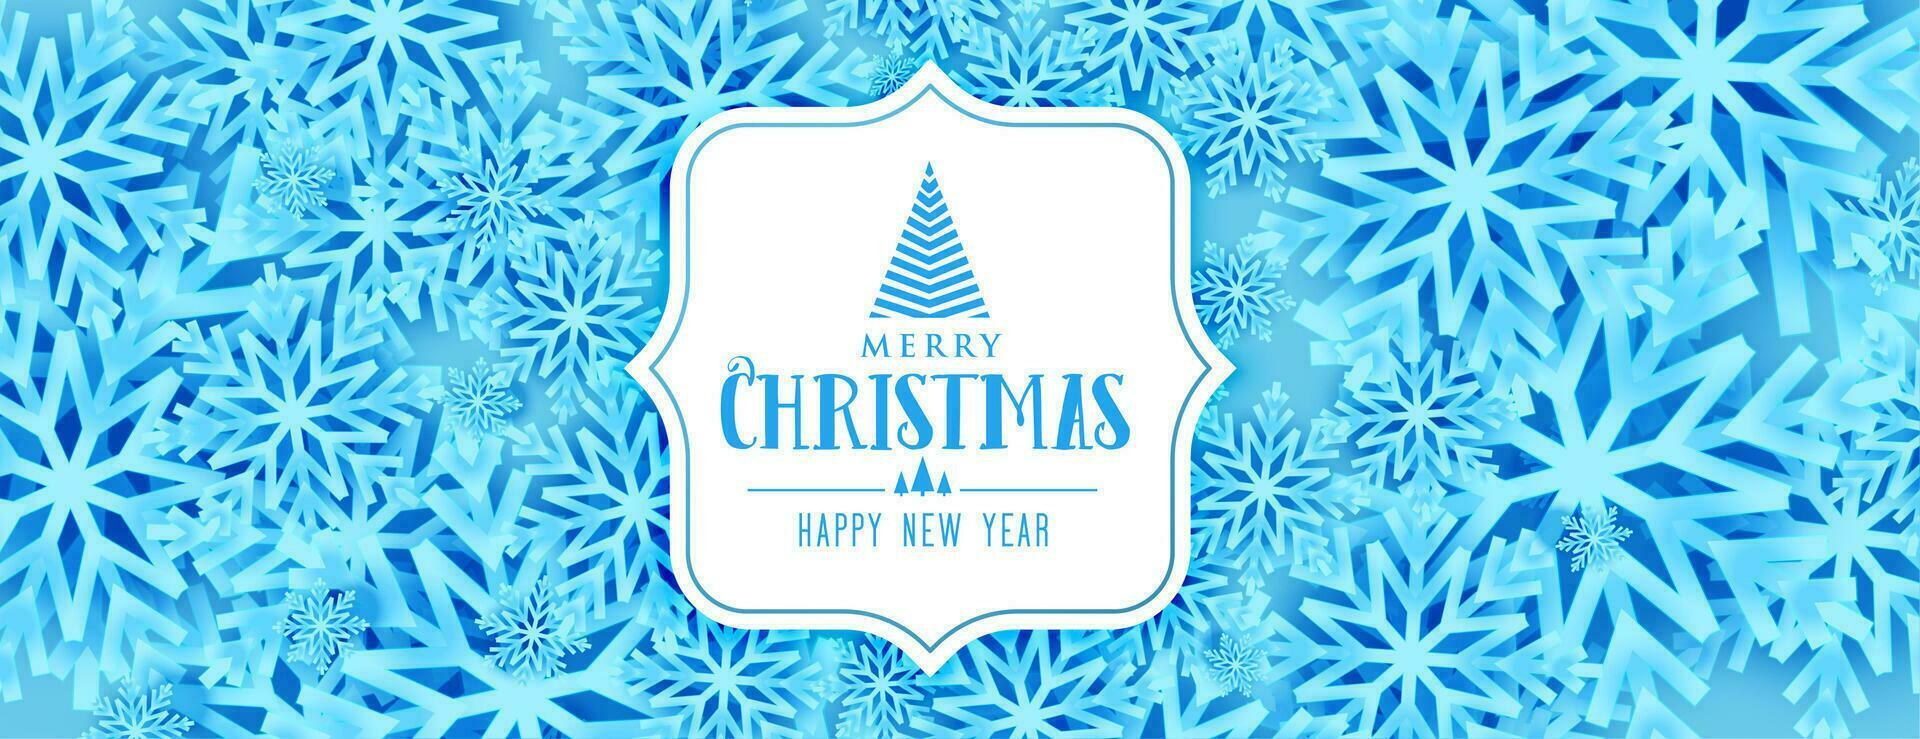 joyeux Noël Festival bannière avec bleu flocons de neige vecteur